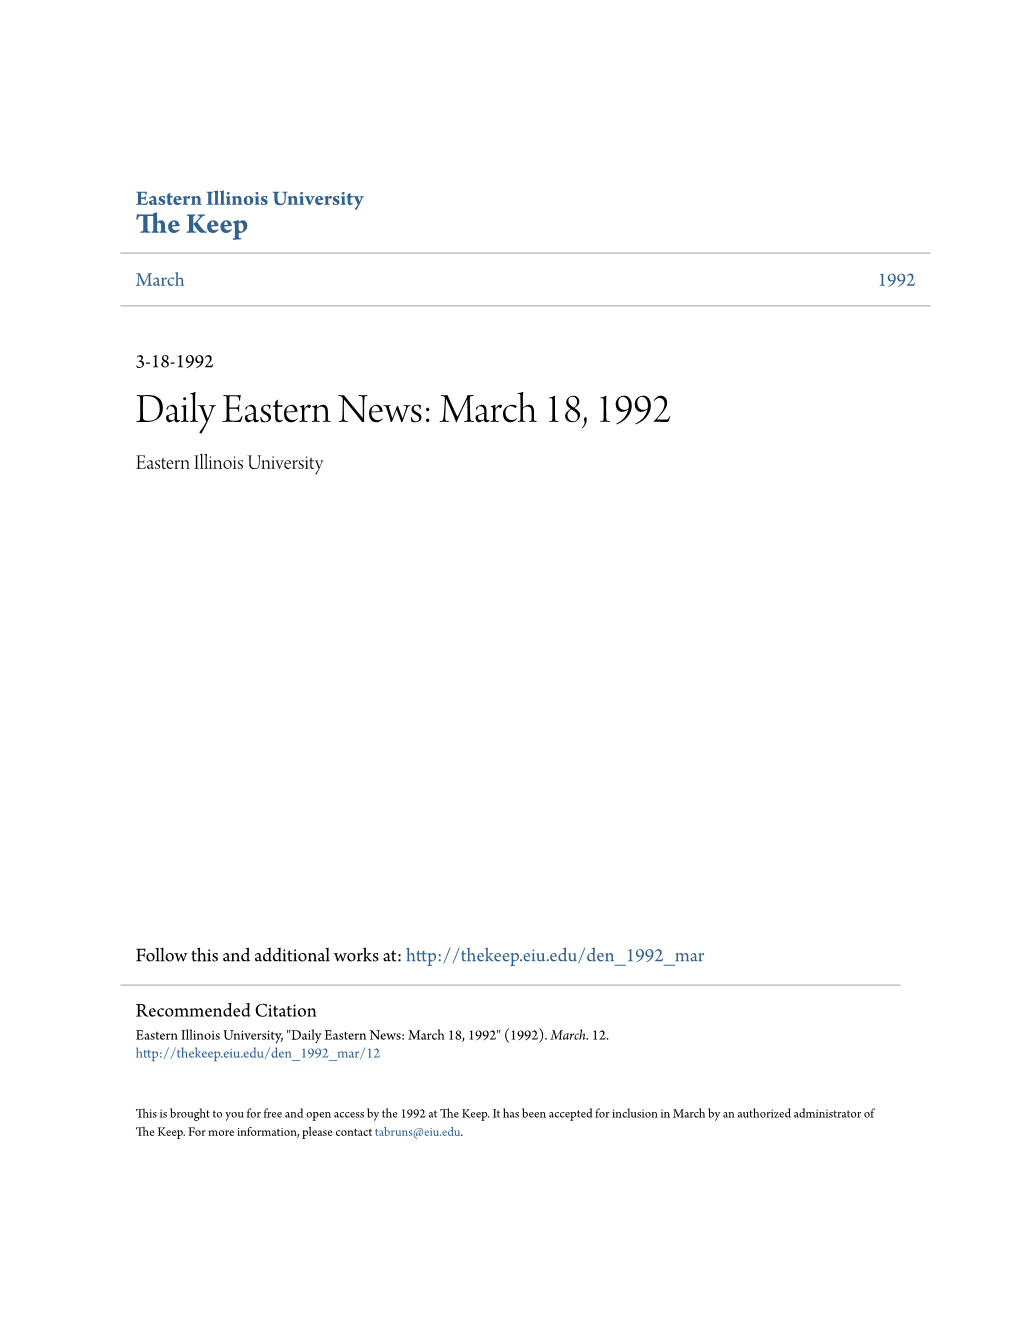 March 18, 1992 Eastern Illinois University